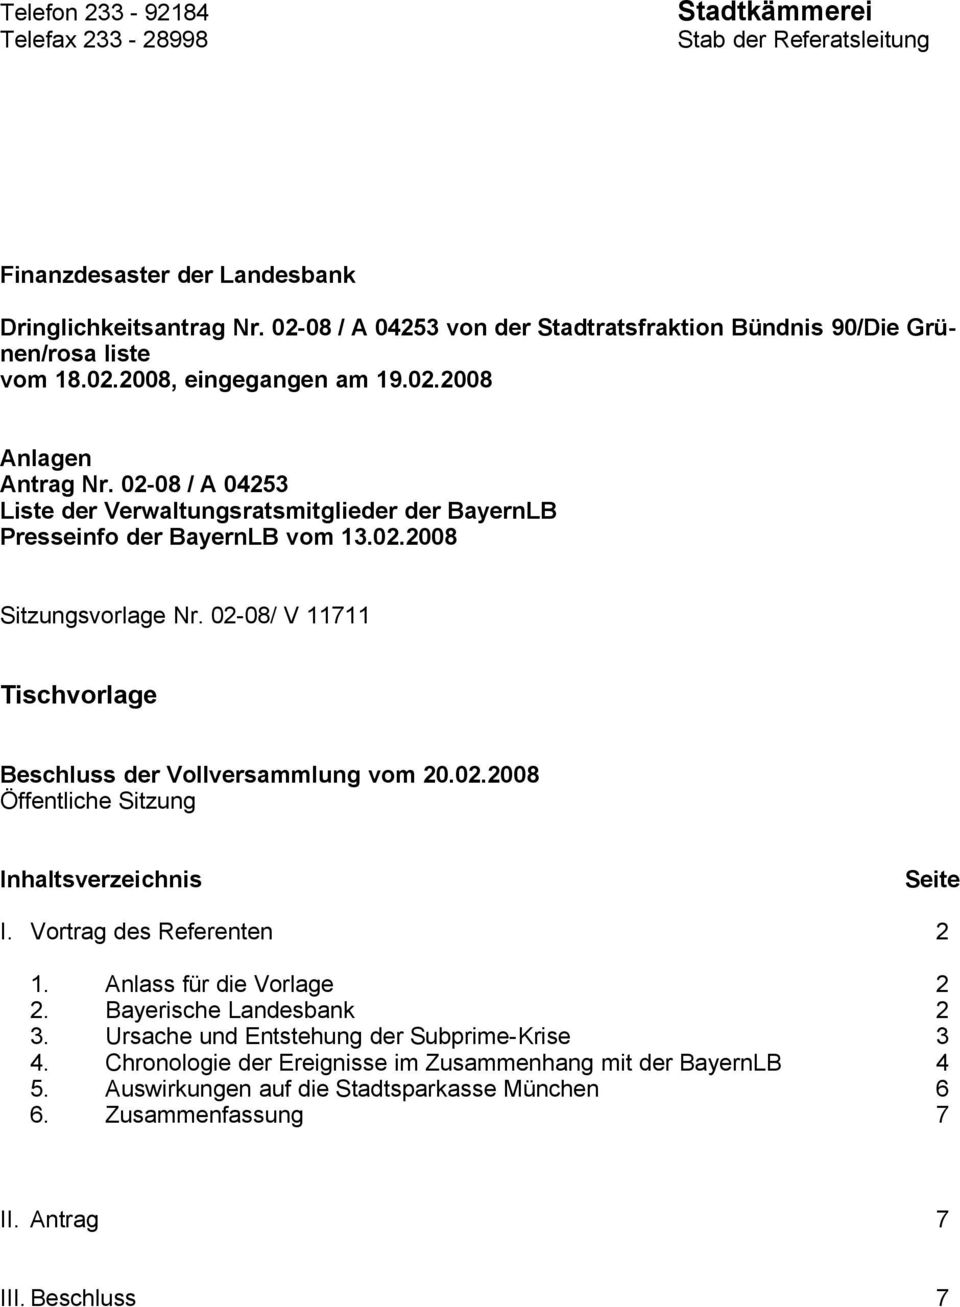 02-08 / A 04253 Liste der Verwaltungsratsmitglieder der BayernLB Presseinfo der BayernLB vom 13.02.2008 Sitzungsvorlage Nr. 02-08/ V 11711 Tischvorlage Beschluss der Vollversammlung vom 20.02.2008 Öffentliche Sitzung Inhaltsverzeichnis Seite I.